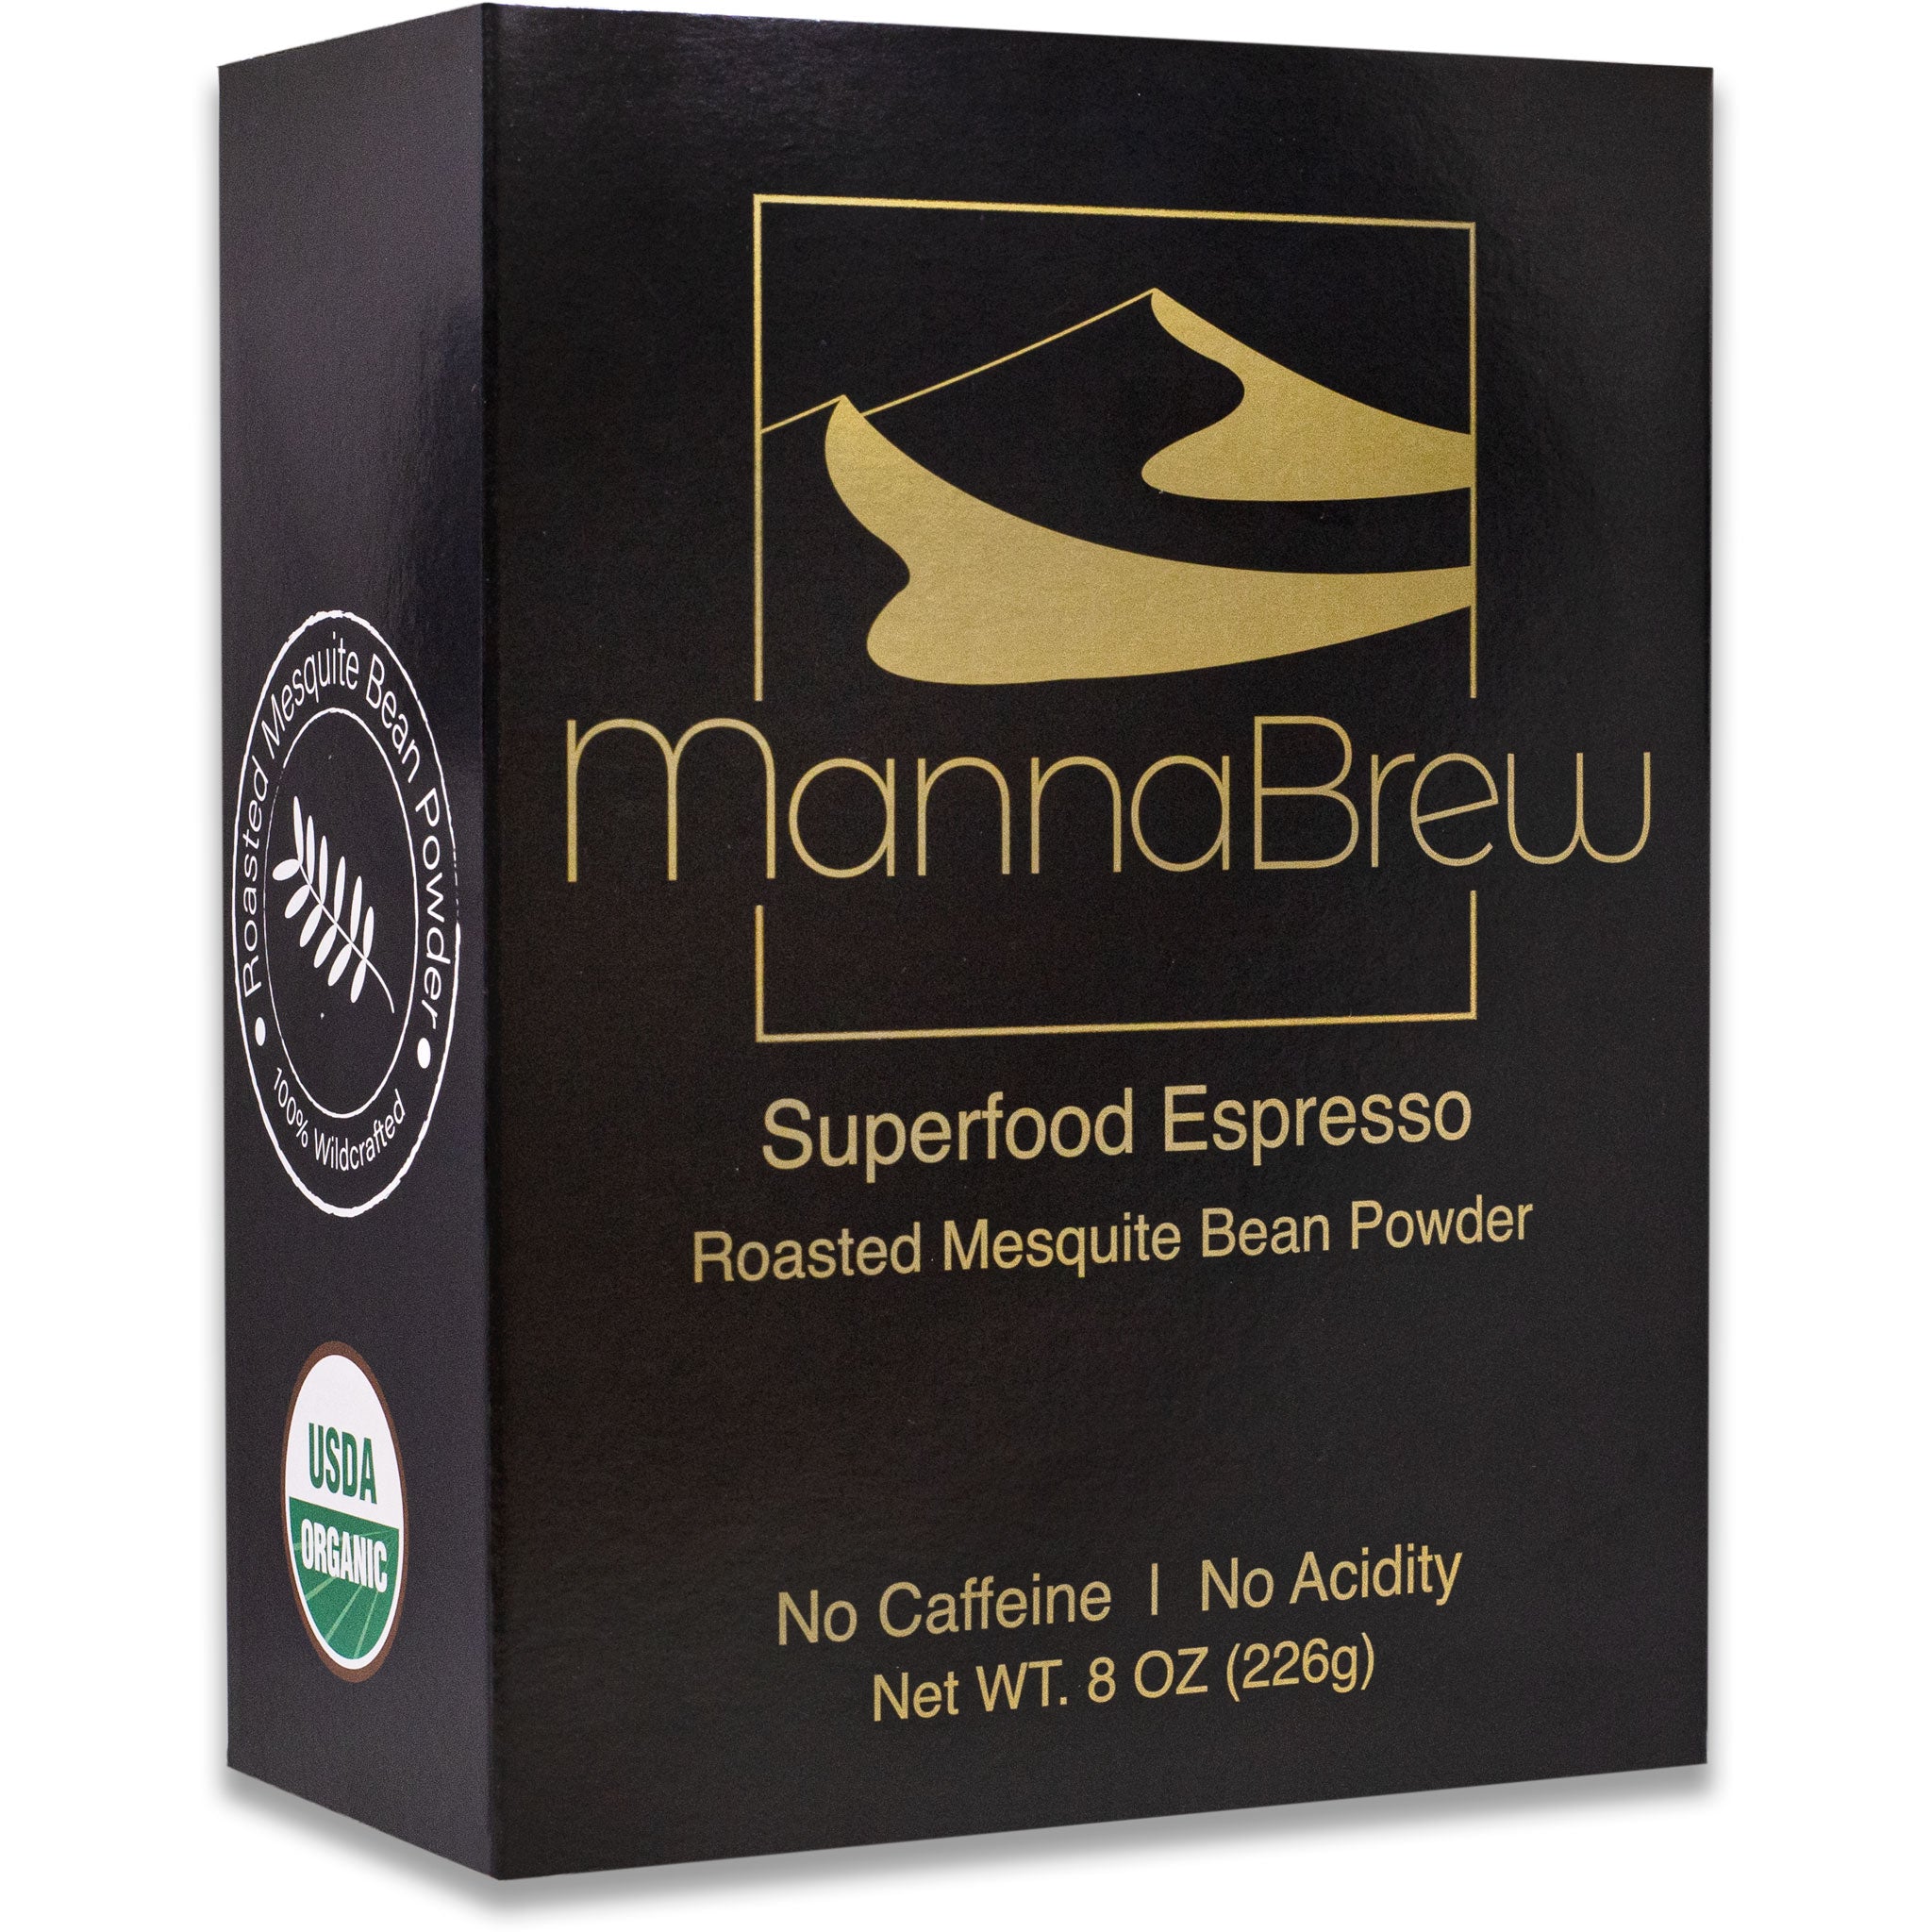 MannaBrew Superfood Espresso